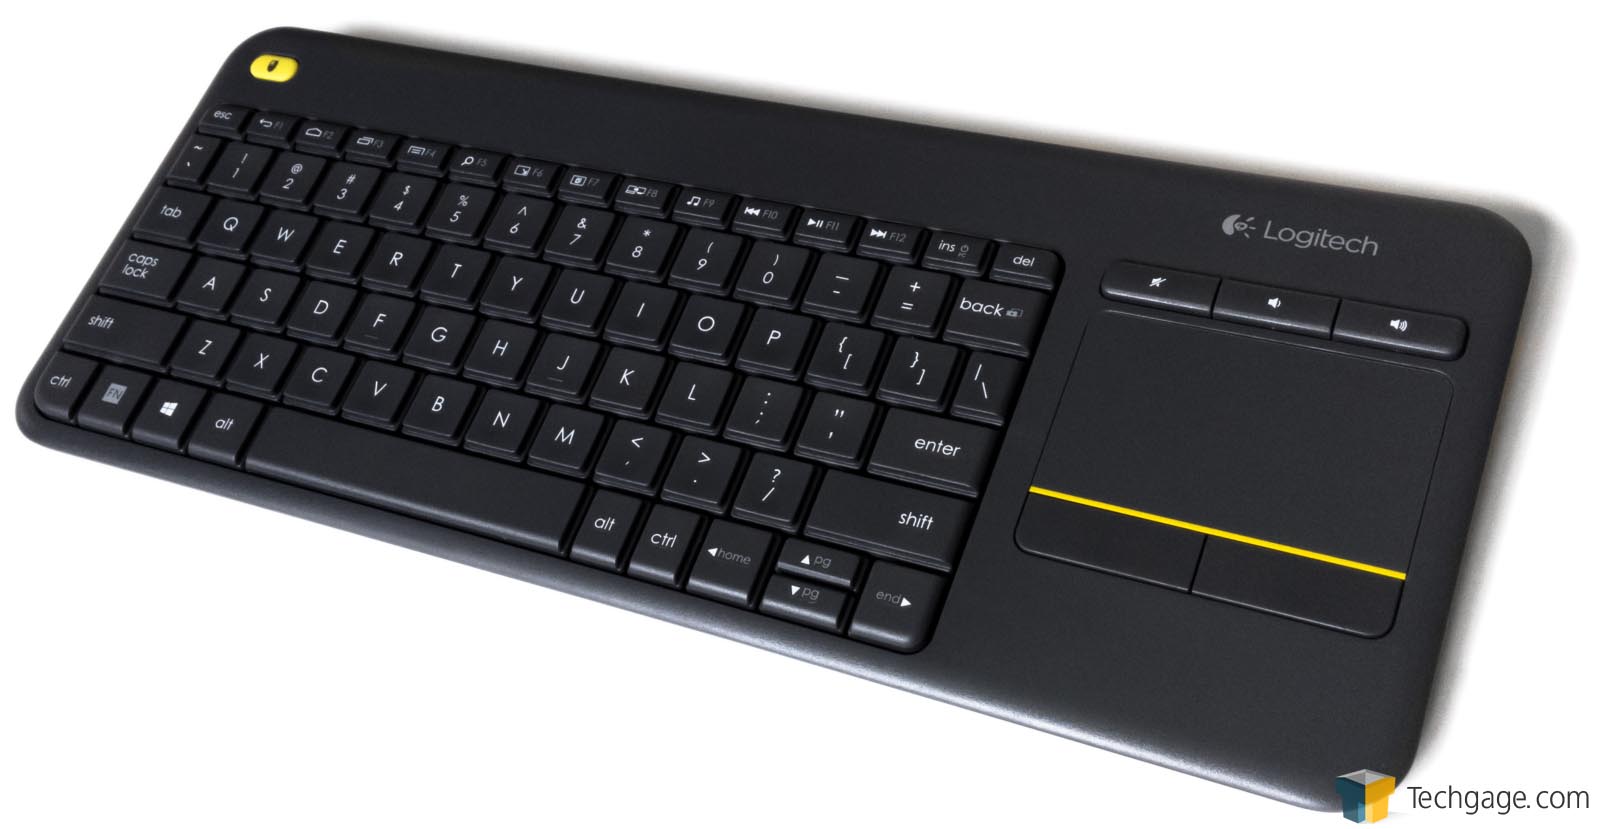 01-Logitech-K400-Plus-Keyboard-Full-View